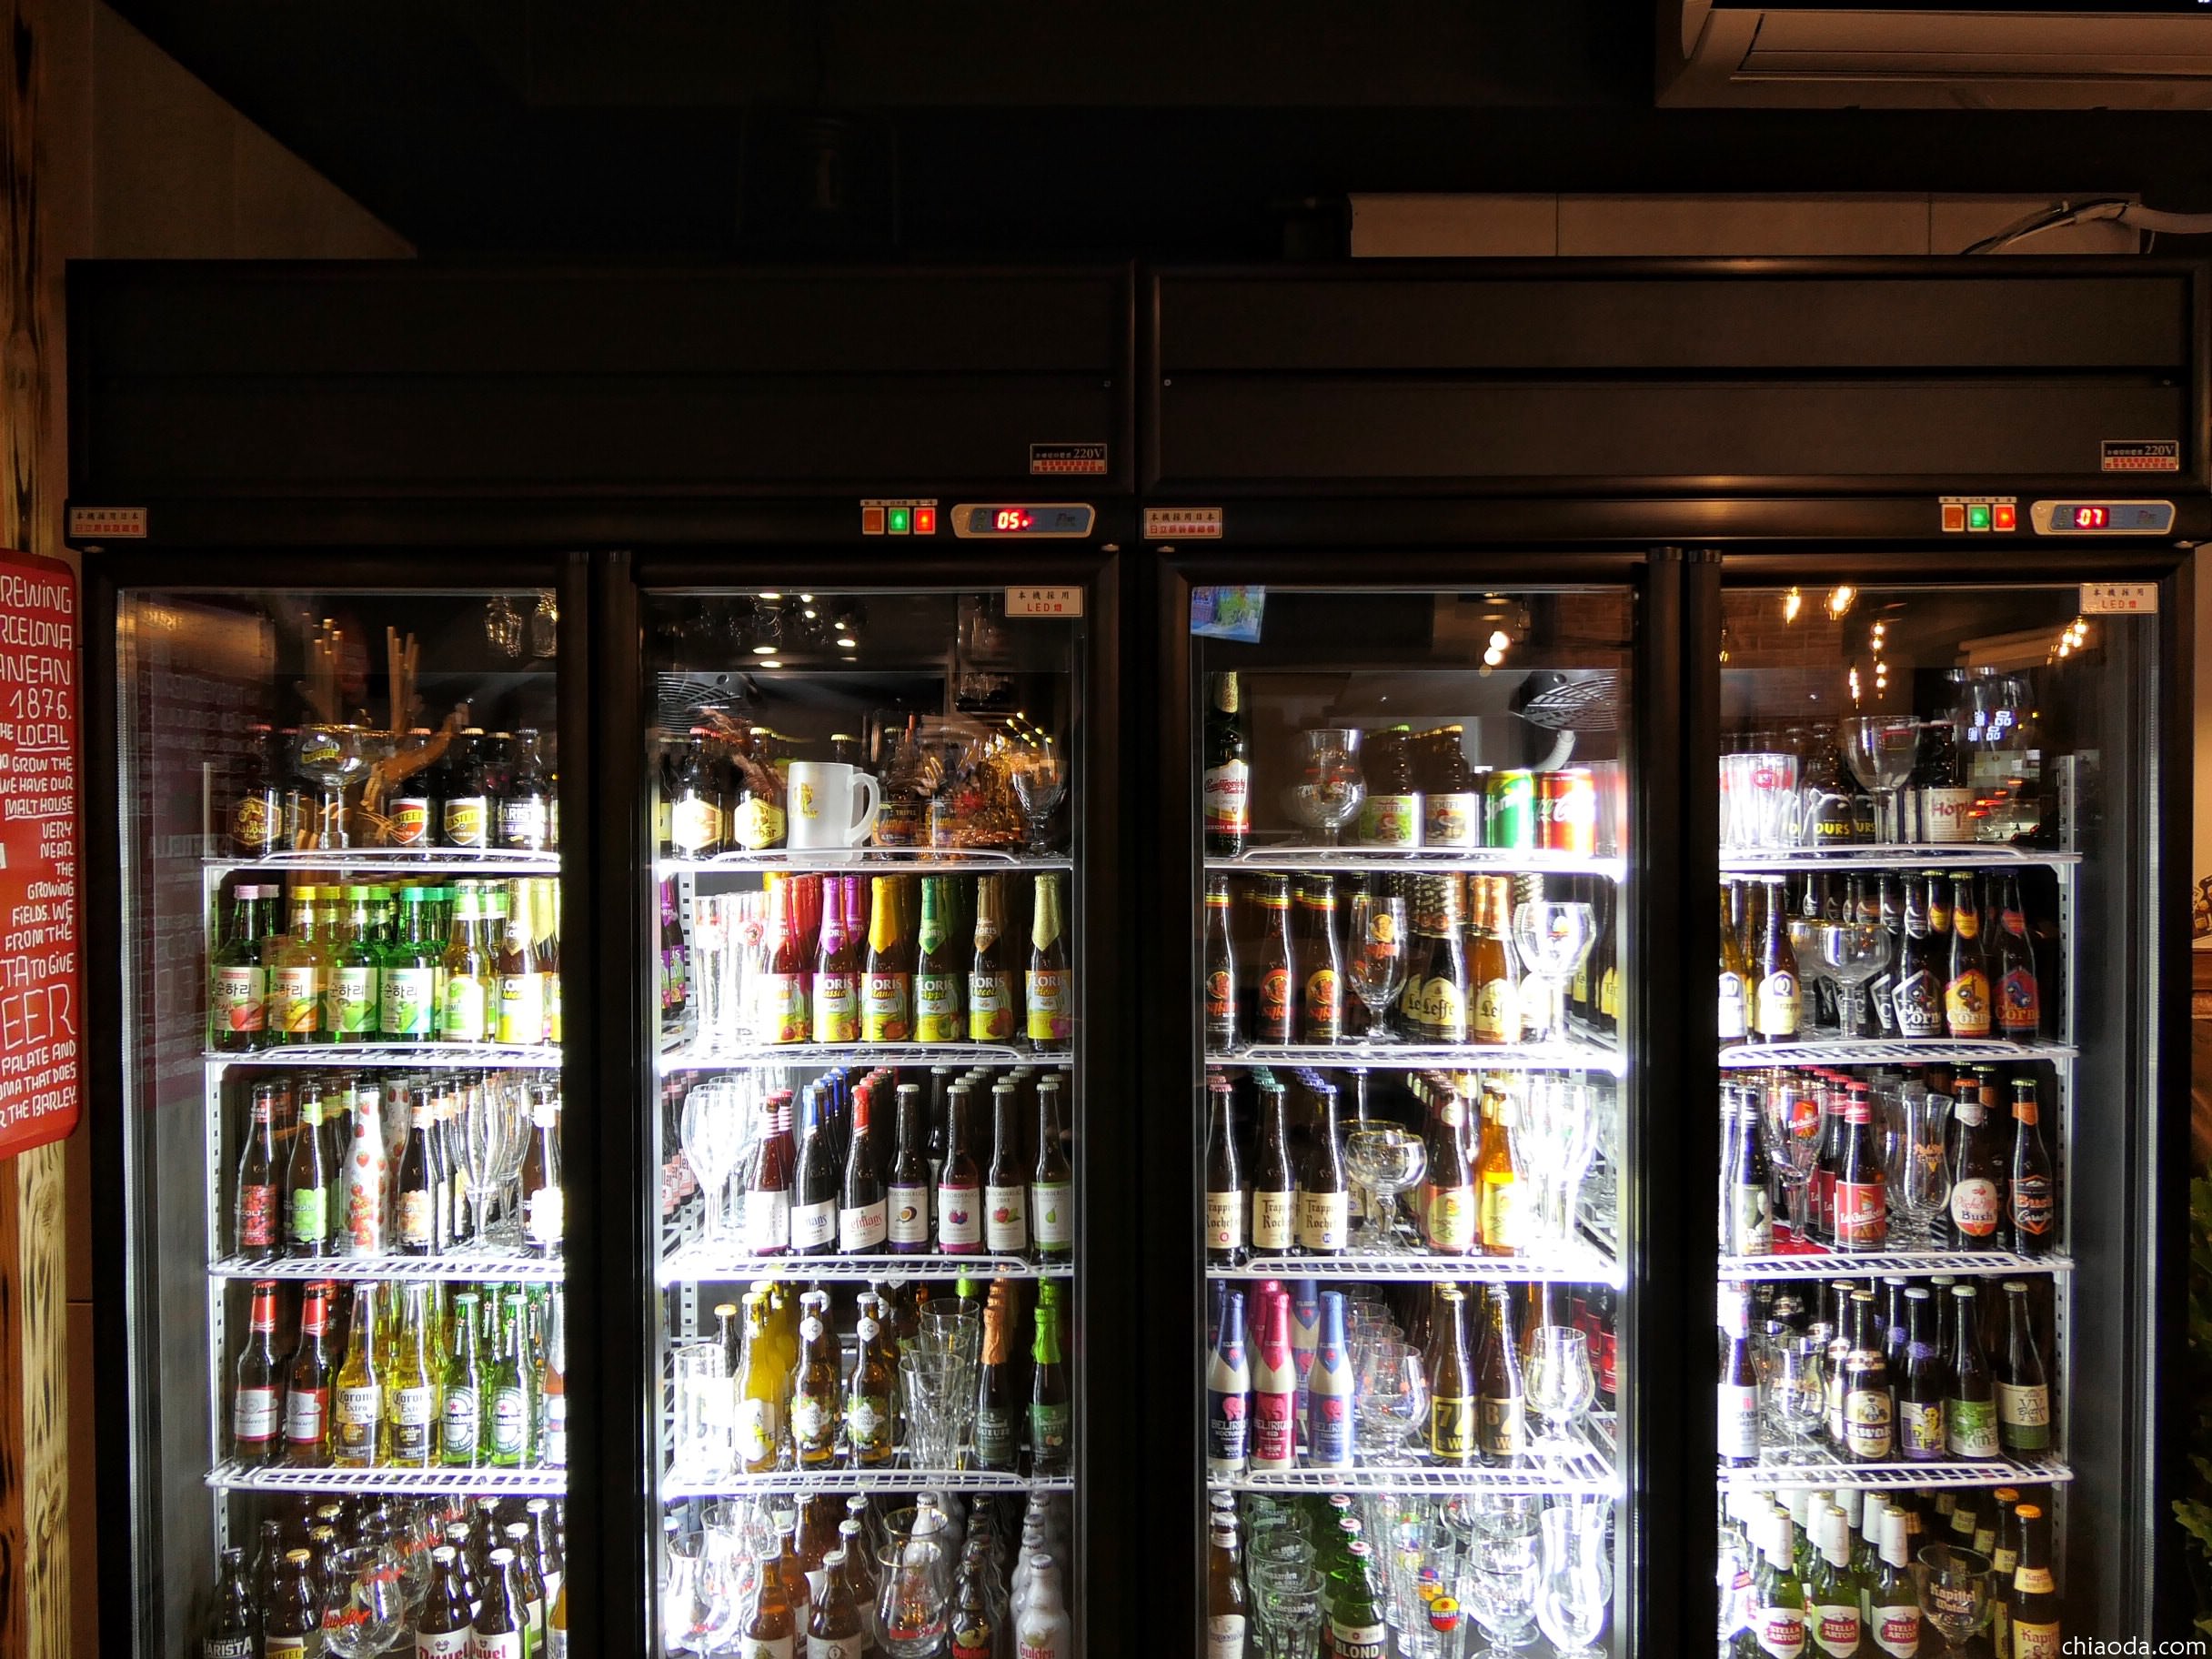 讓啤酒、可樂整齊的收納在冰箱裡 - 486先生